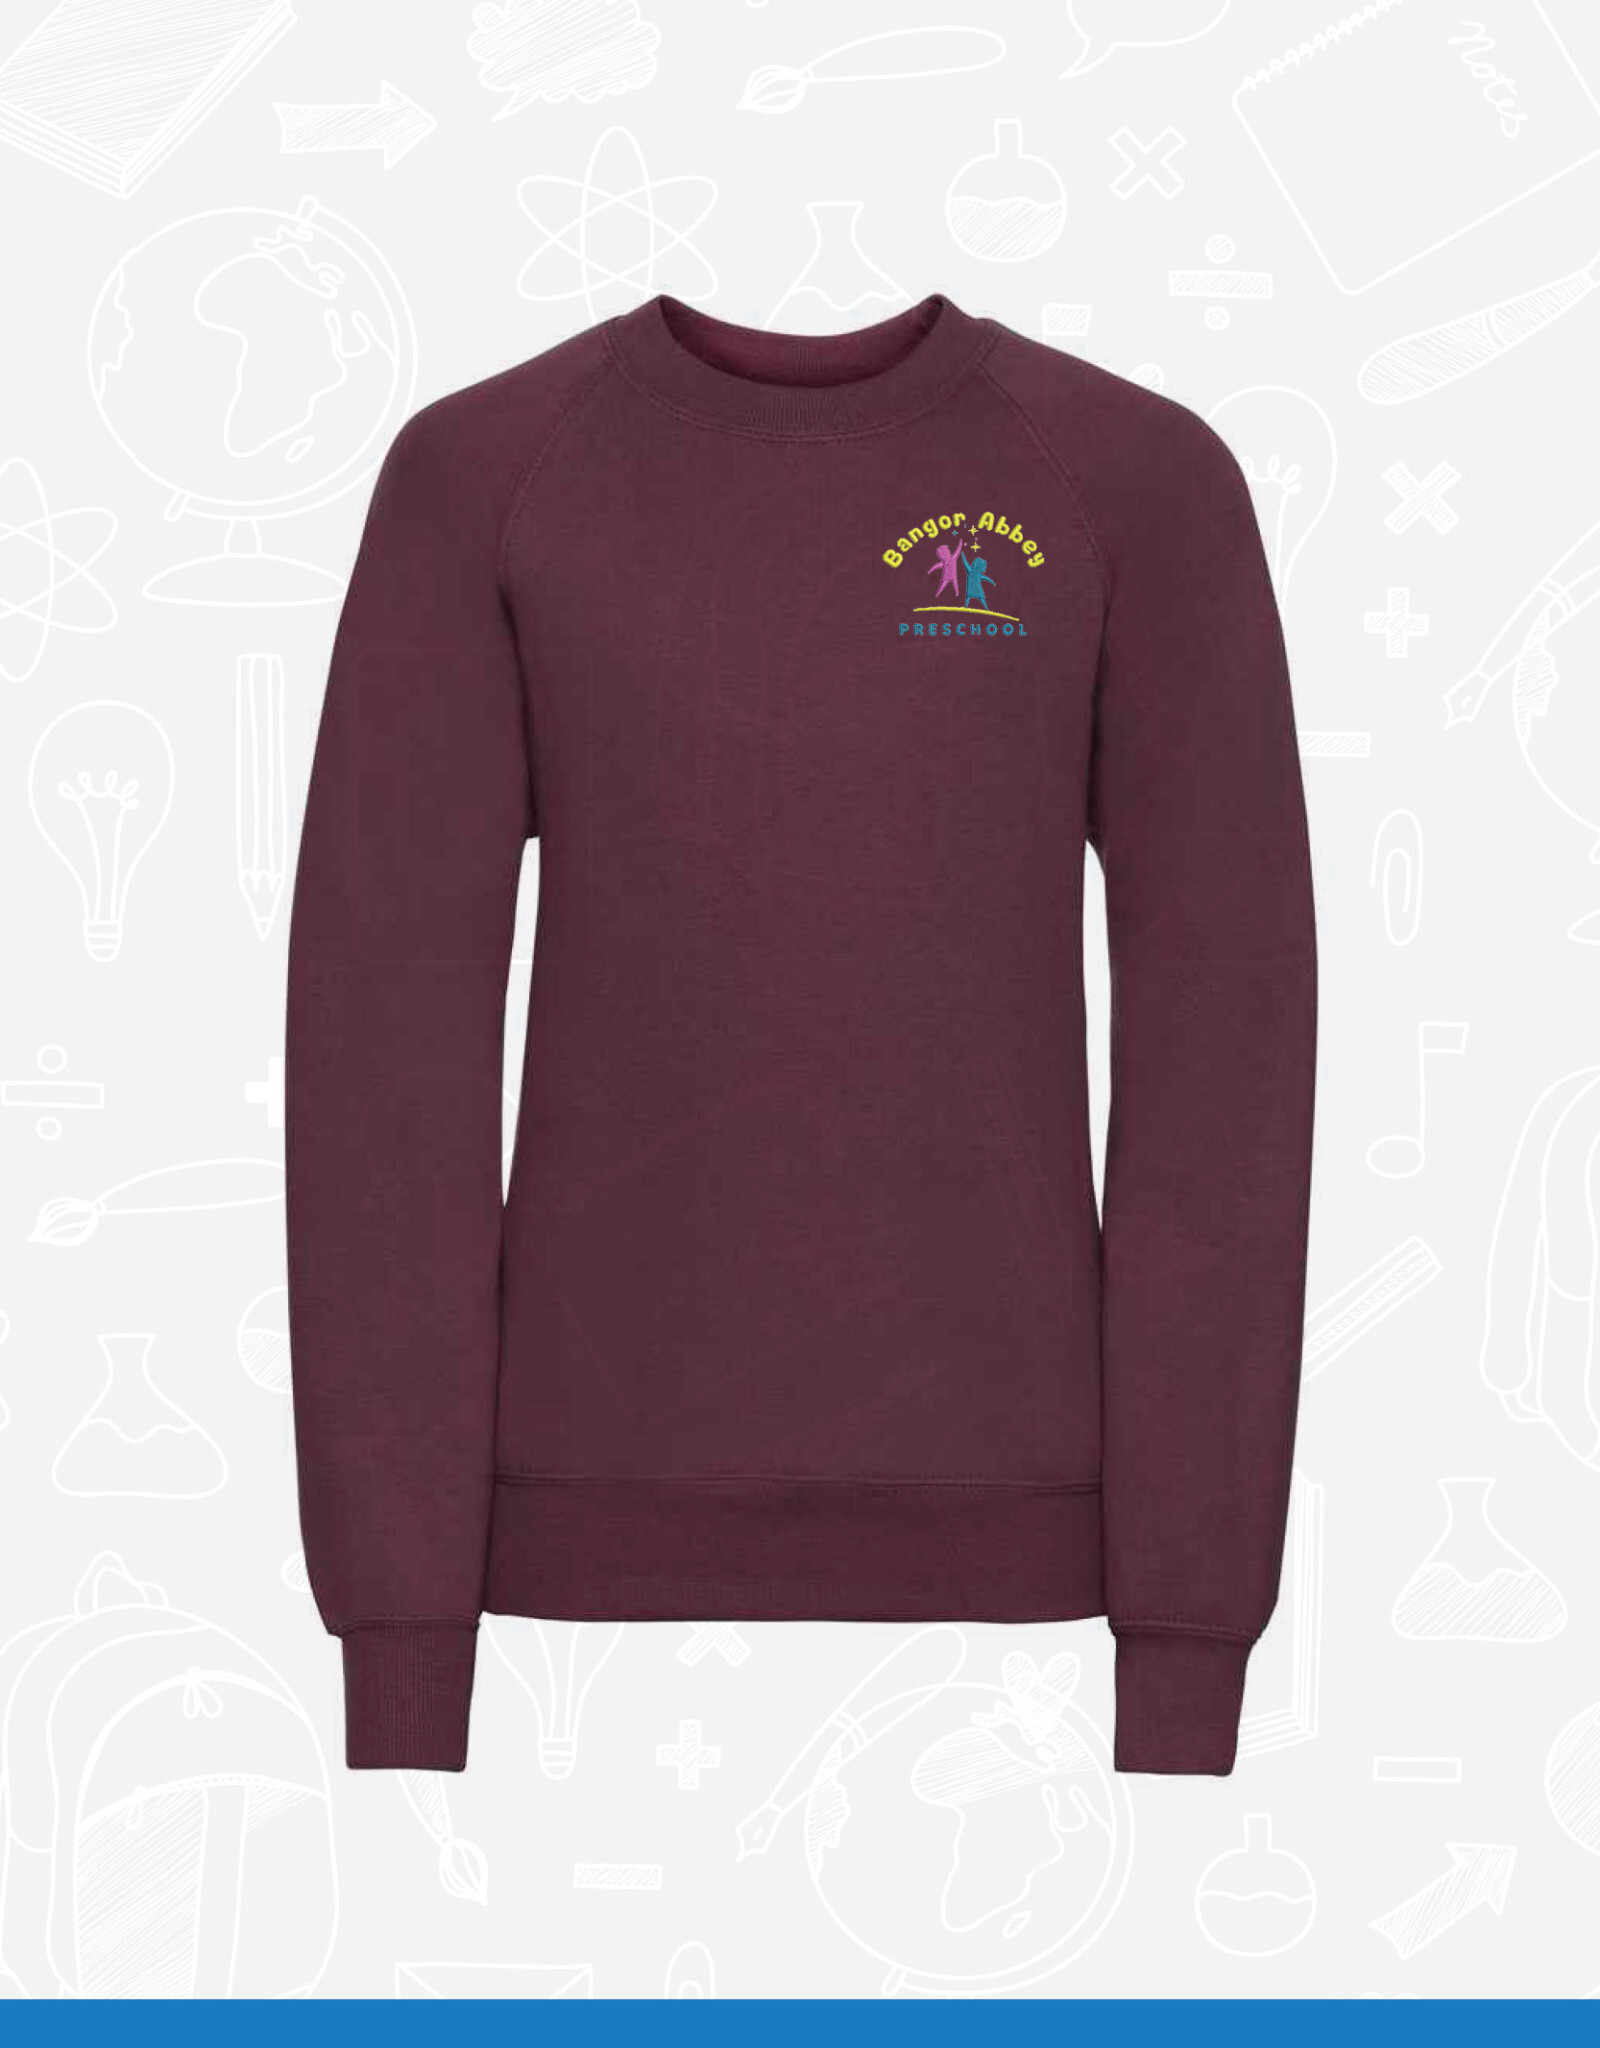 Russell Bangor Abbey Pre School Sweatshirt (762B)